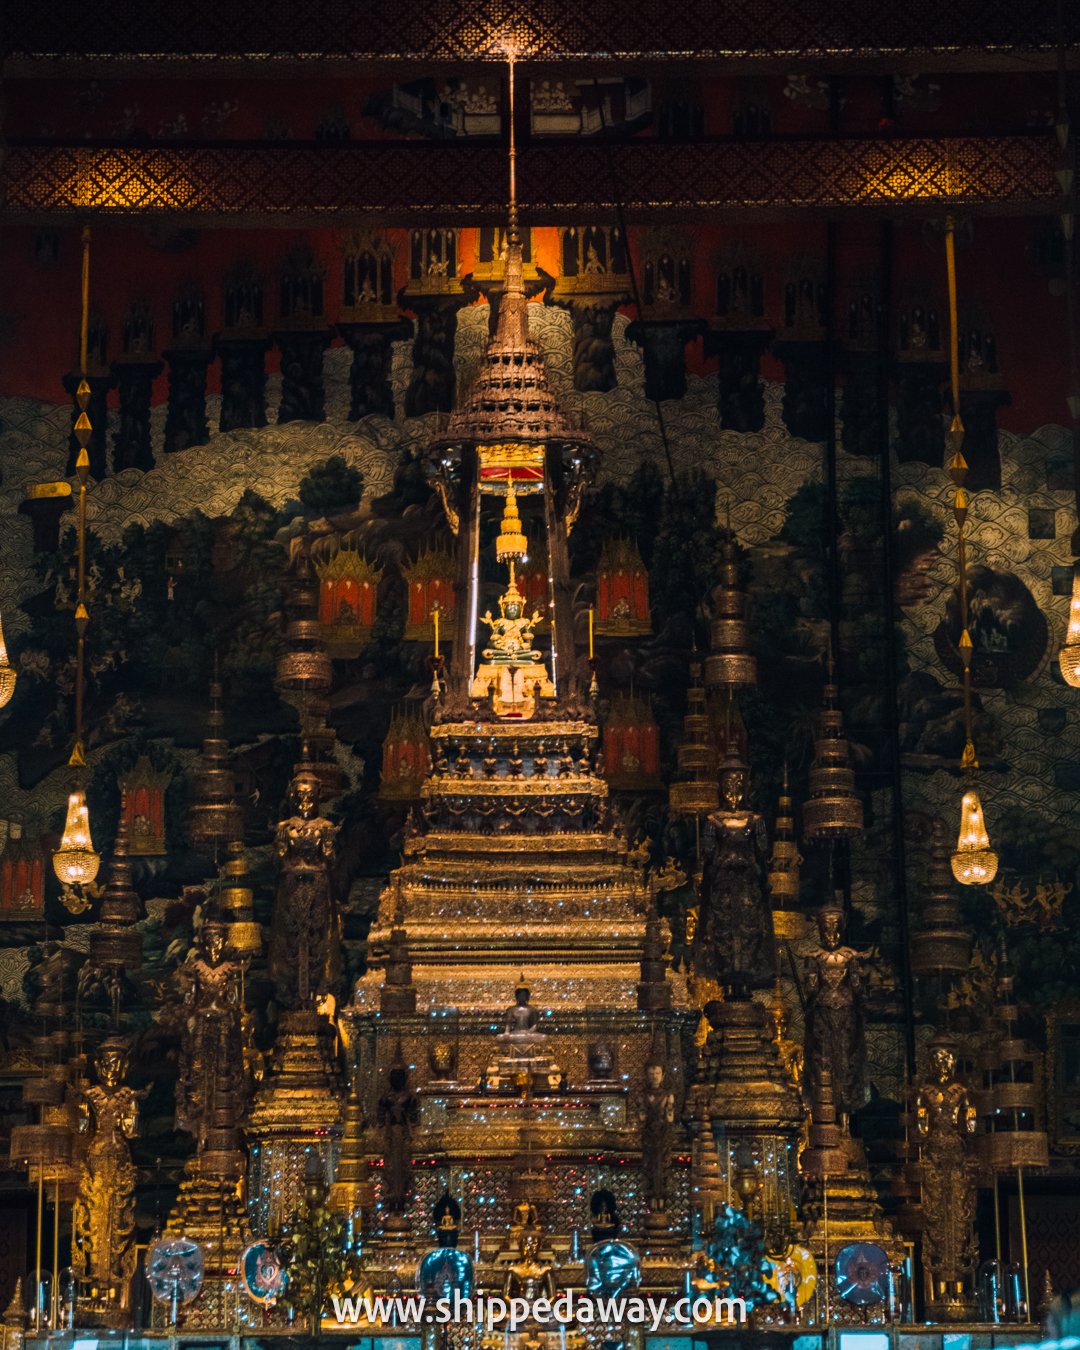 Emerald Buddha at The Grand Palace in Bangkok Thailand, Grand Palace Bangkok Travel Guide, Things to see in the Grand Palace in Bangkok,